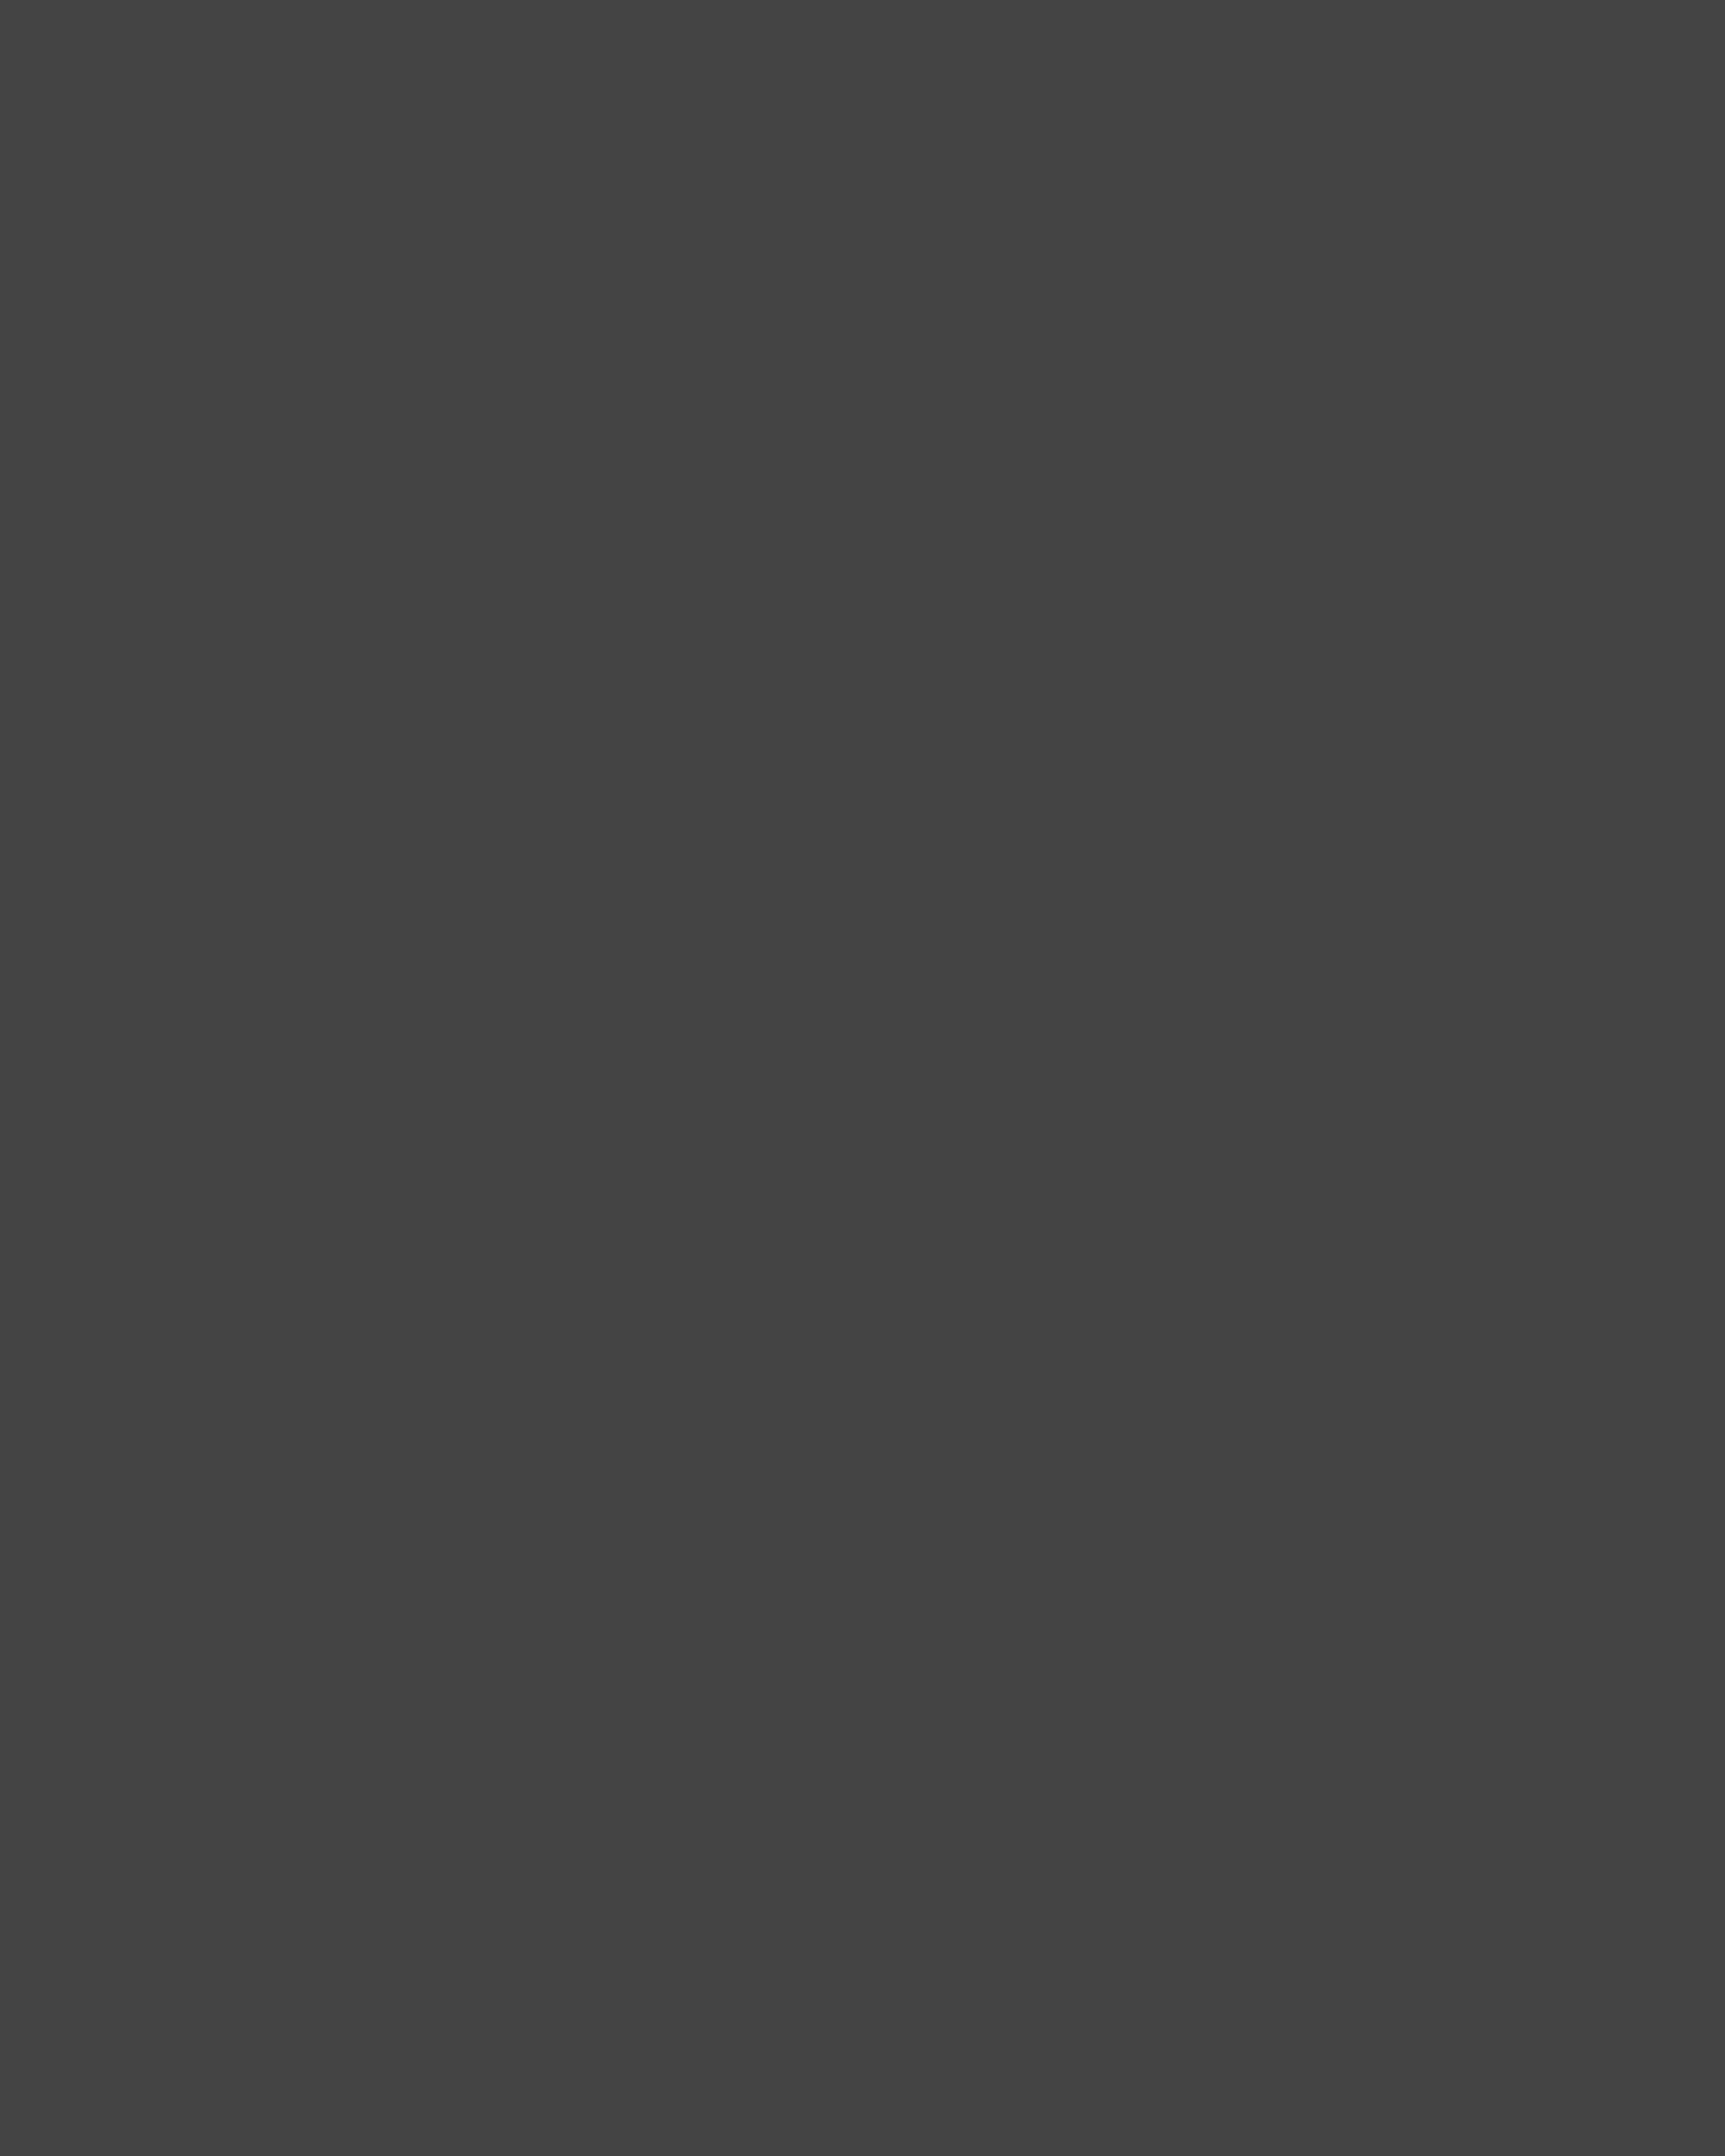 Роберт Рождественский во время прогулки. Москва, 1970-е годы. Фотография: Государственный музей истории литературы, искусства и культуры Алтая, Барнаул